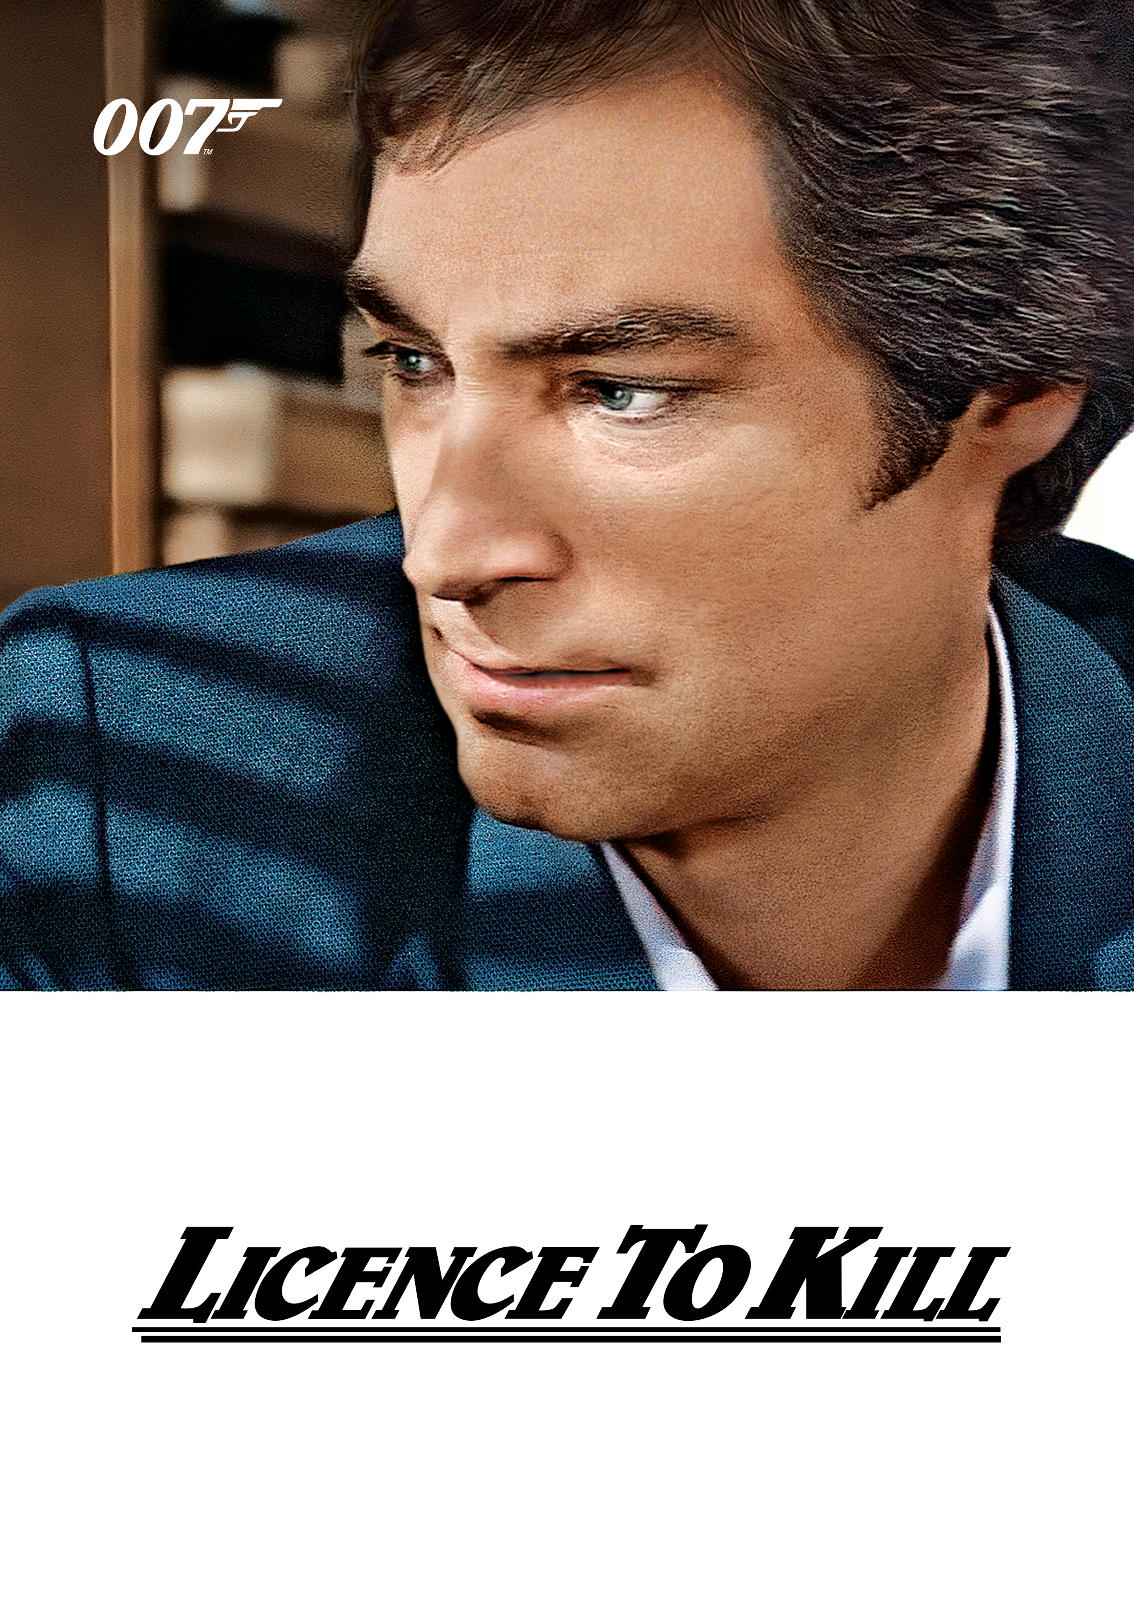 1989 licence to kill